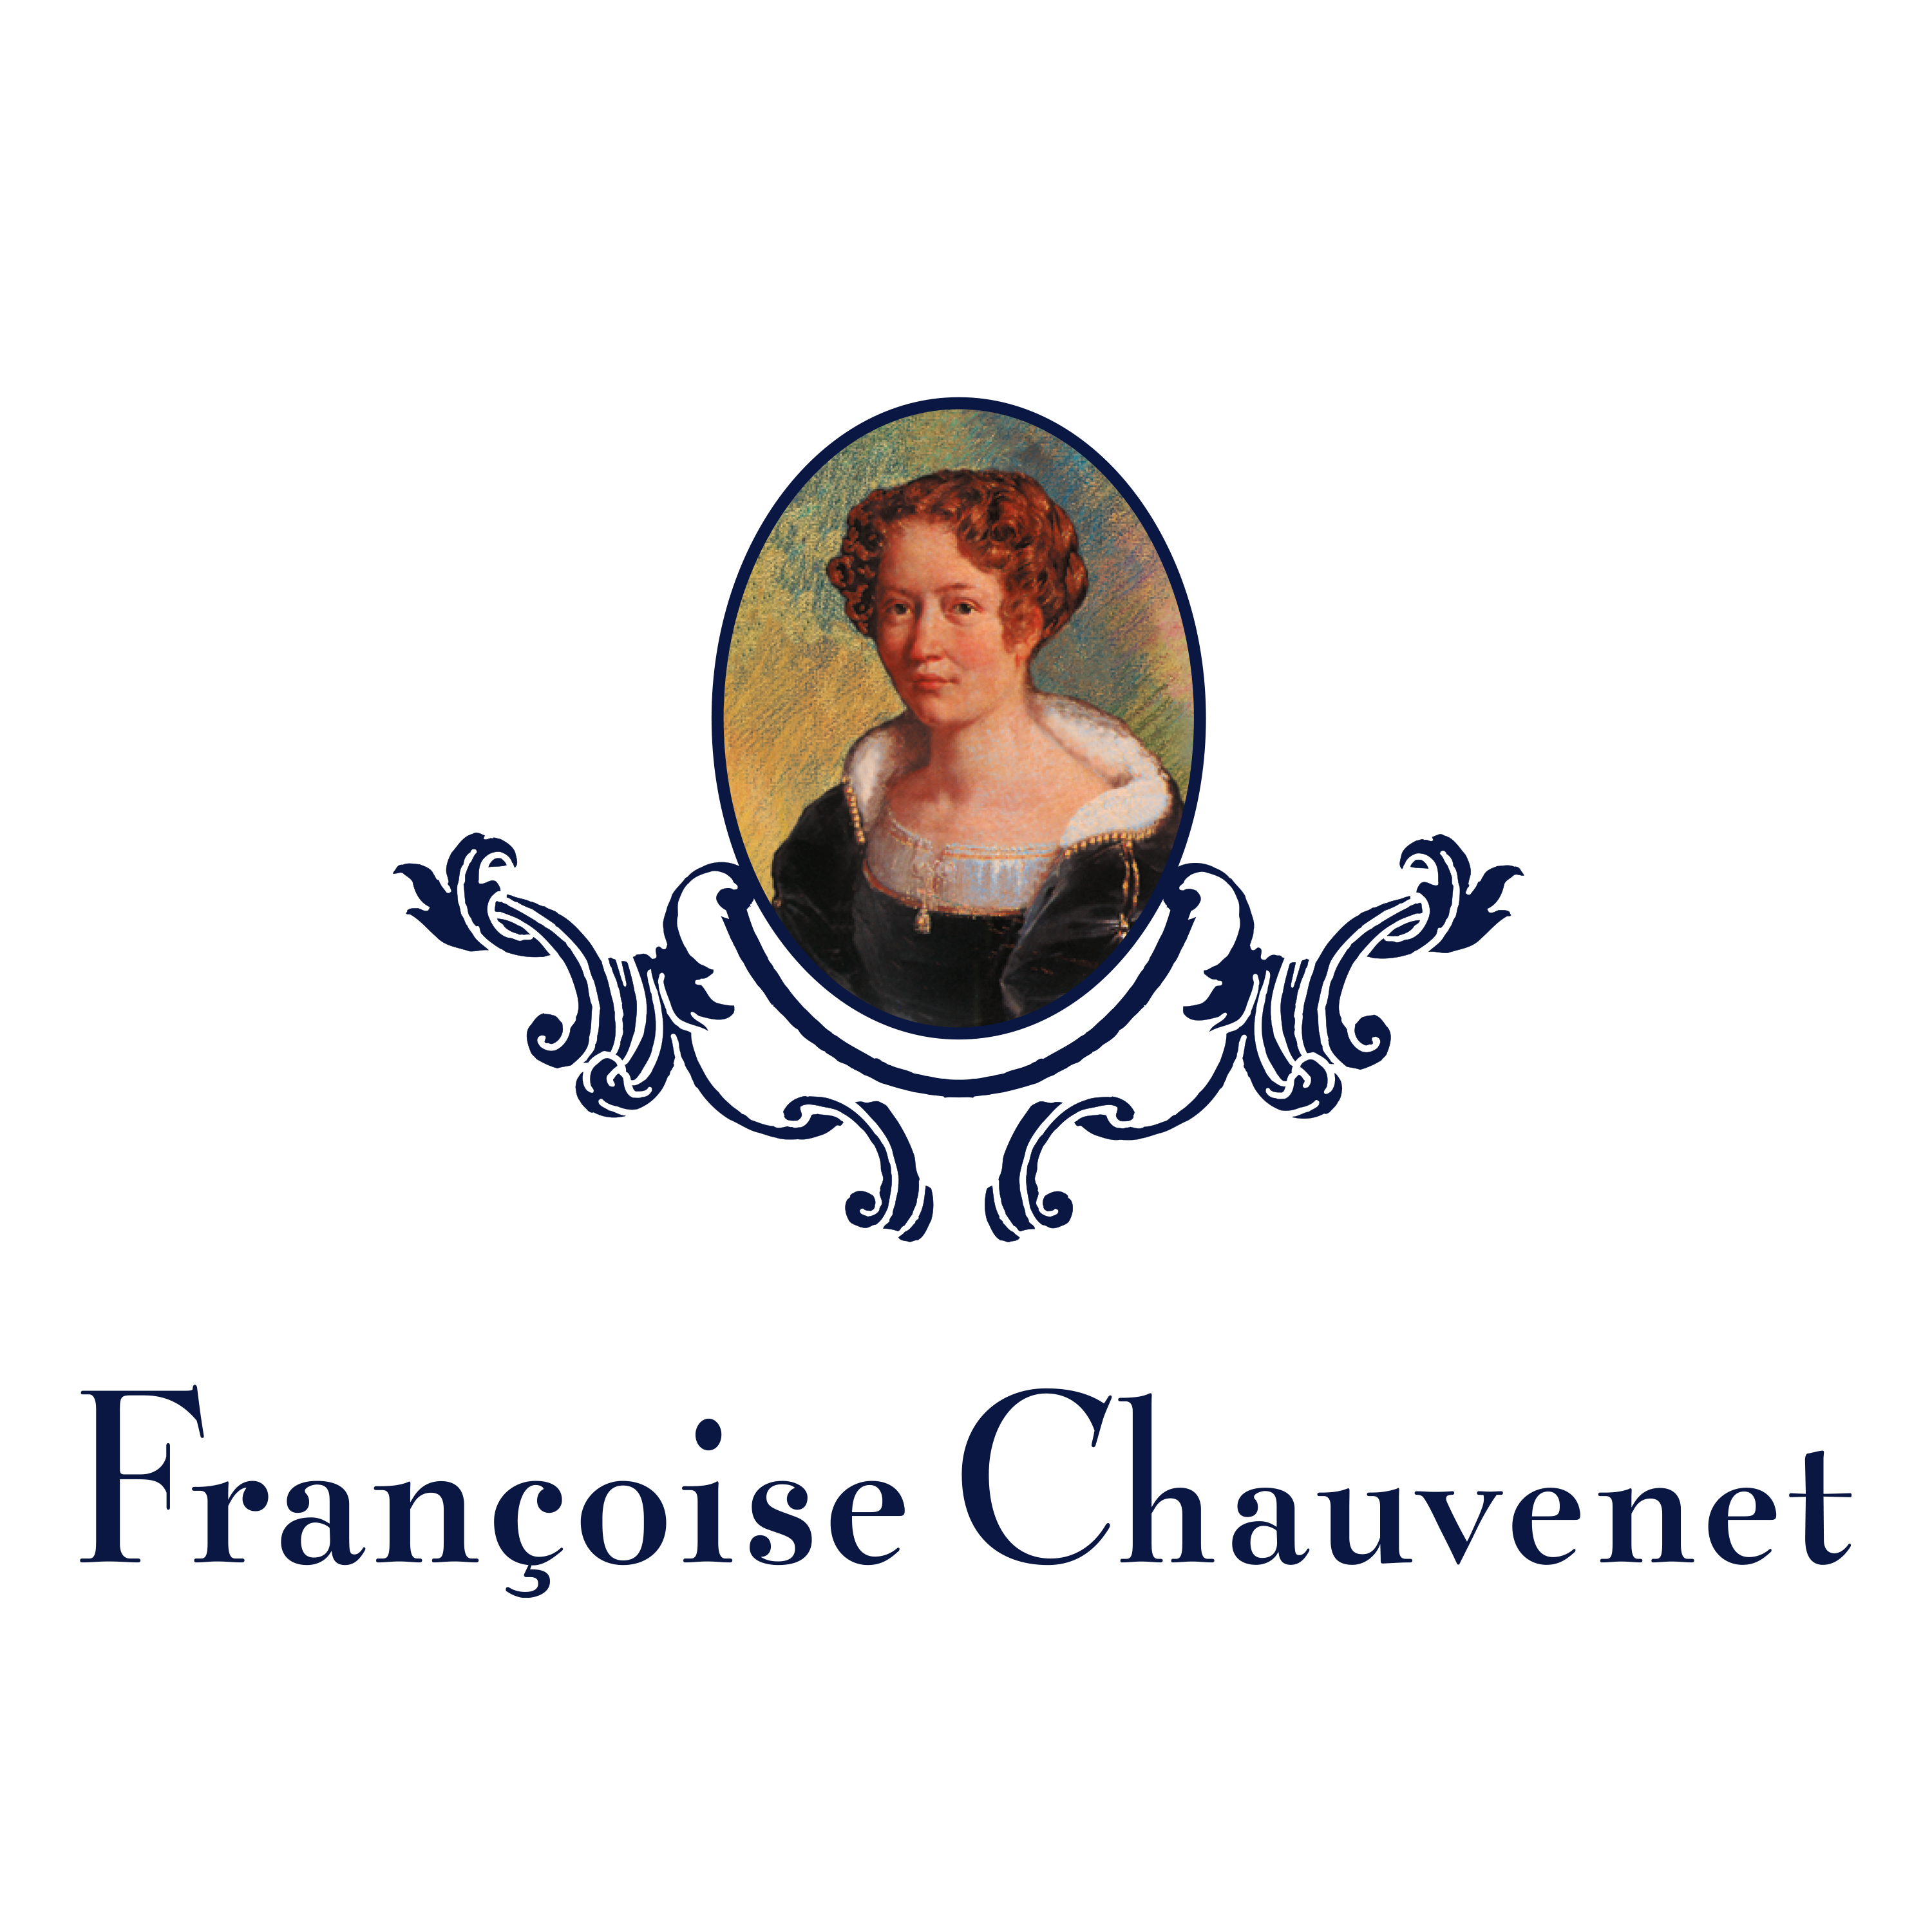 Francoise Chauvenet